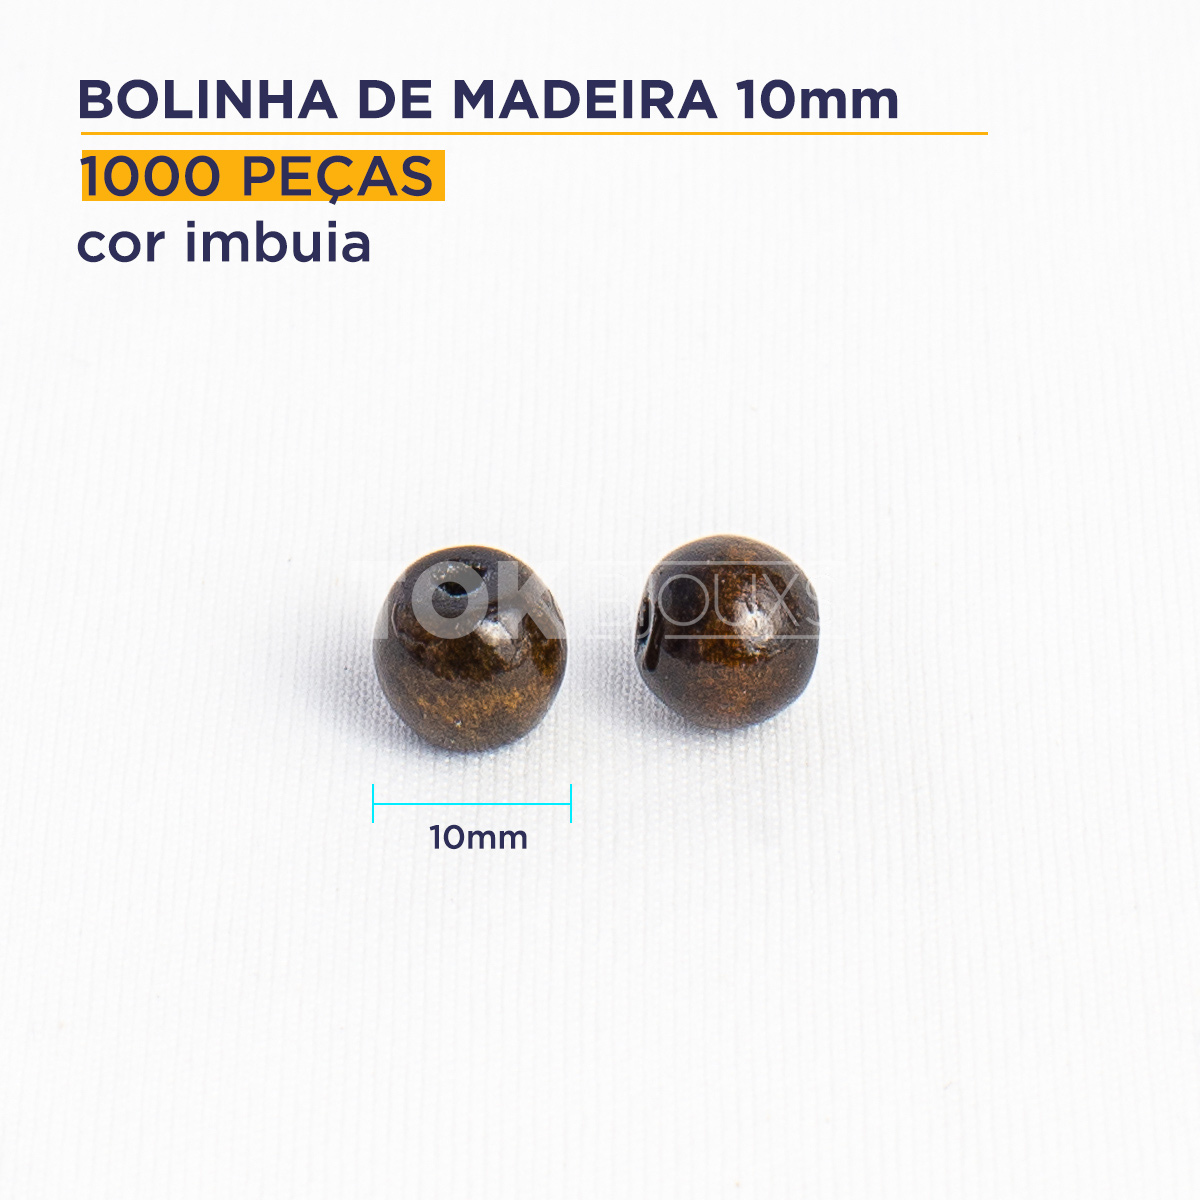 Bolinha de Madeira - 10mm - Imbuia - 1000 Peças